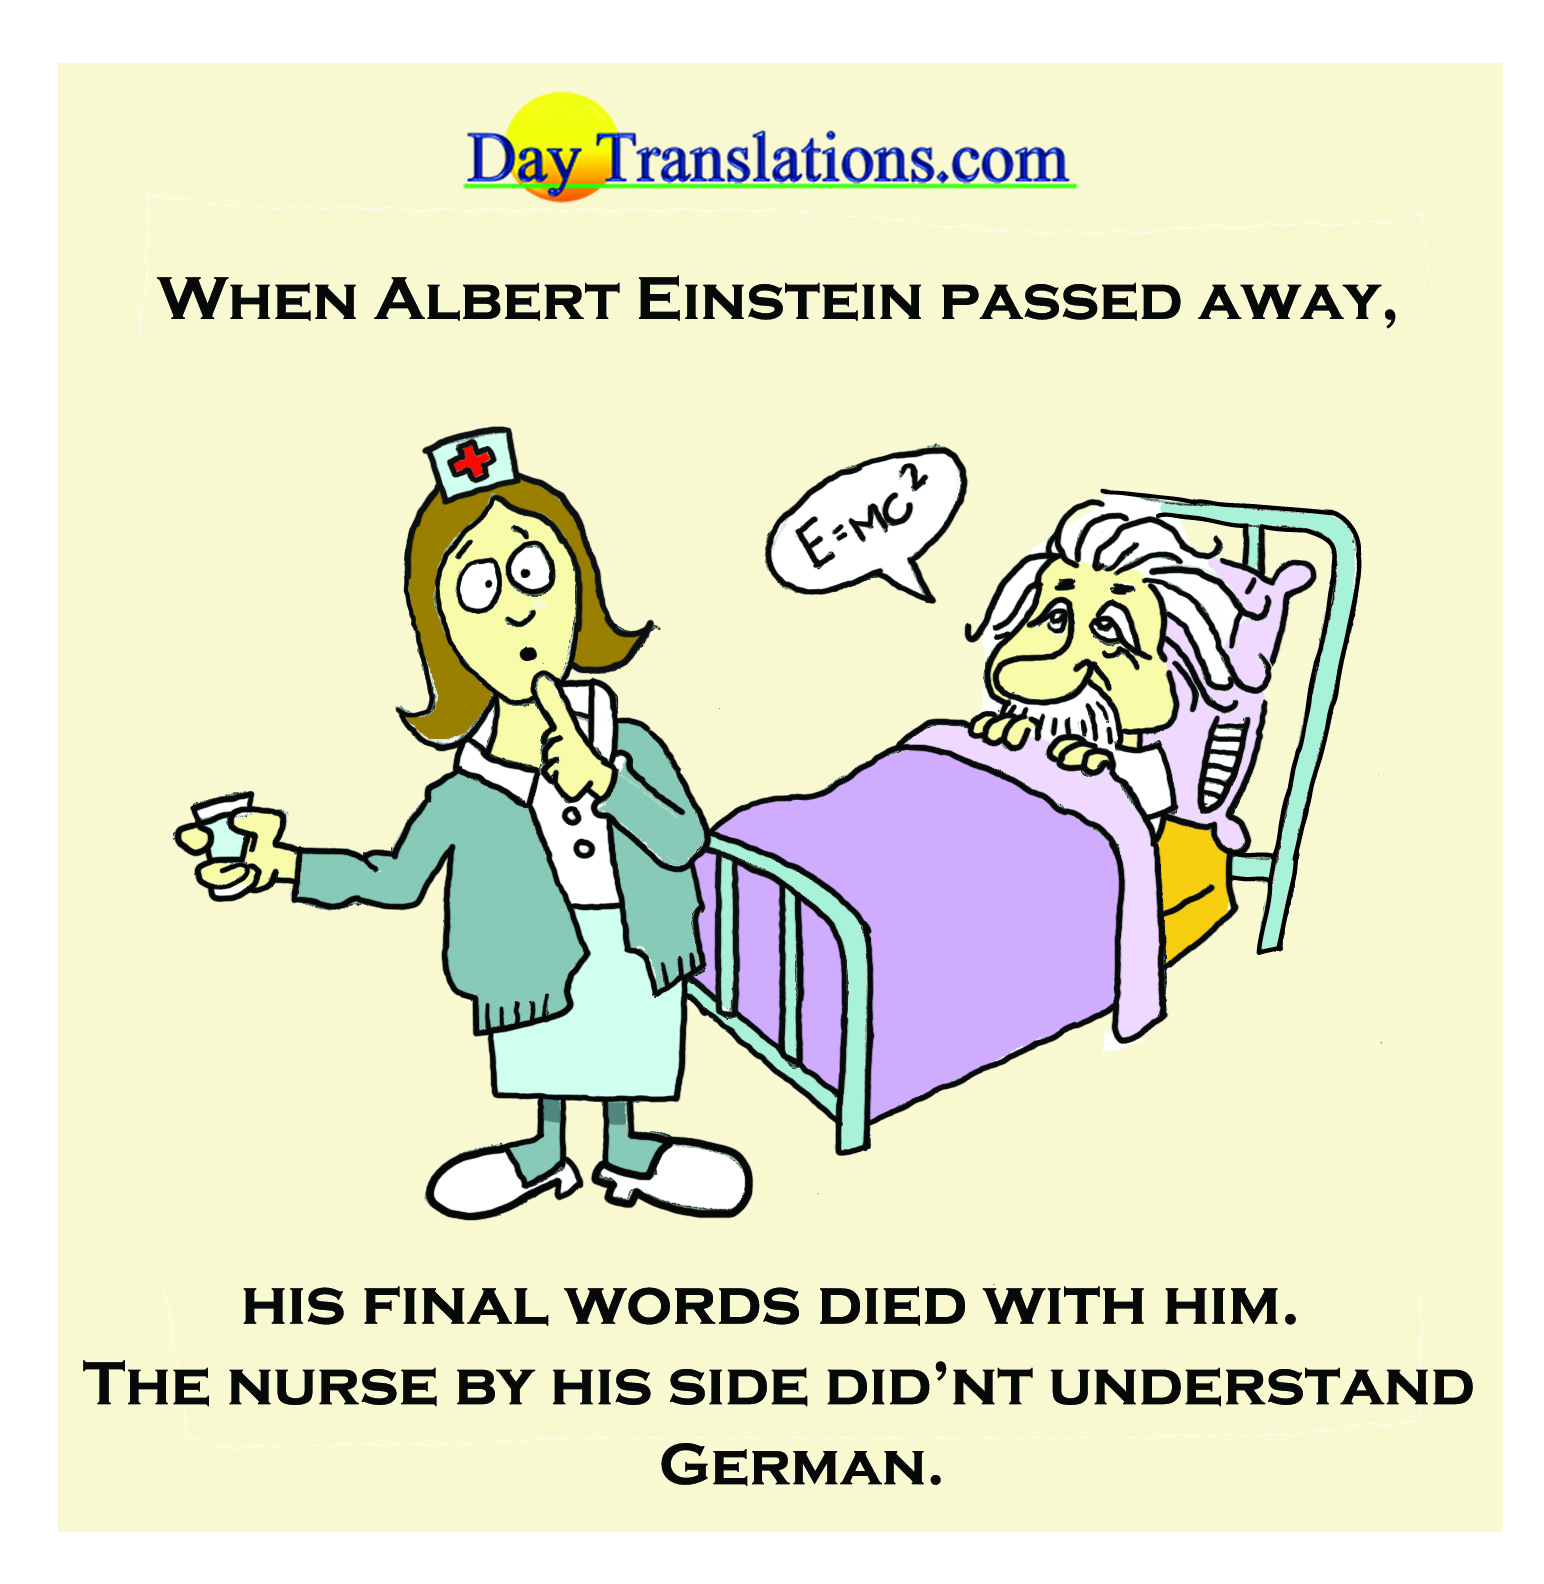 Day News - Einstein’s Last Words